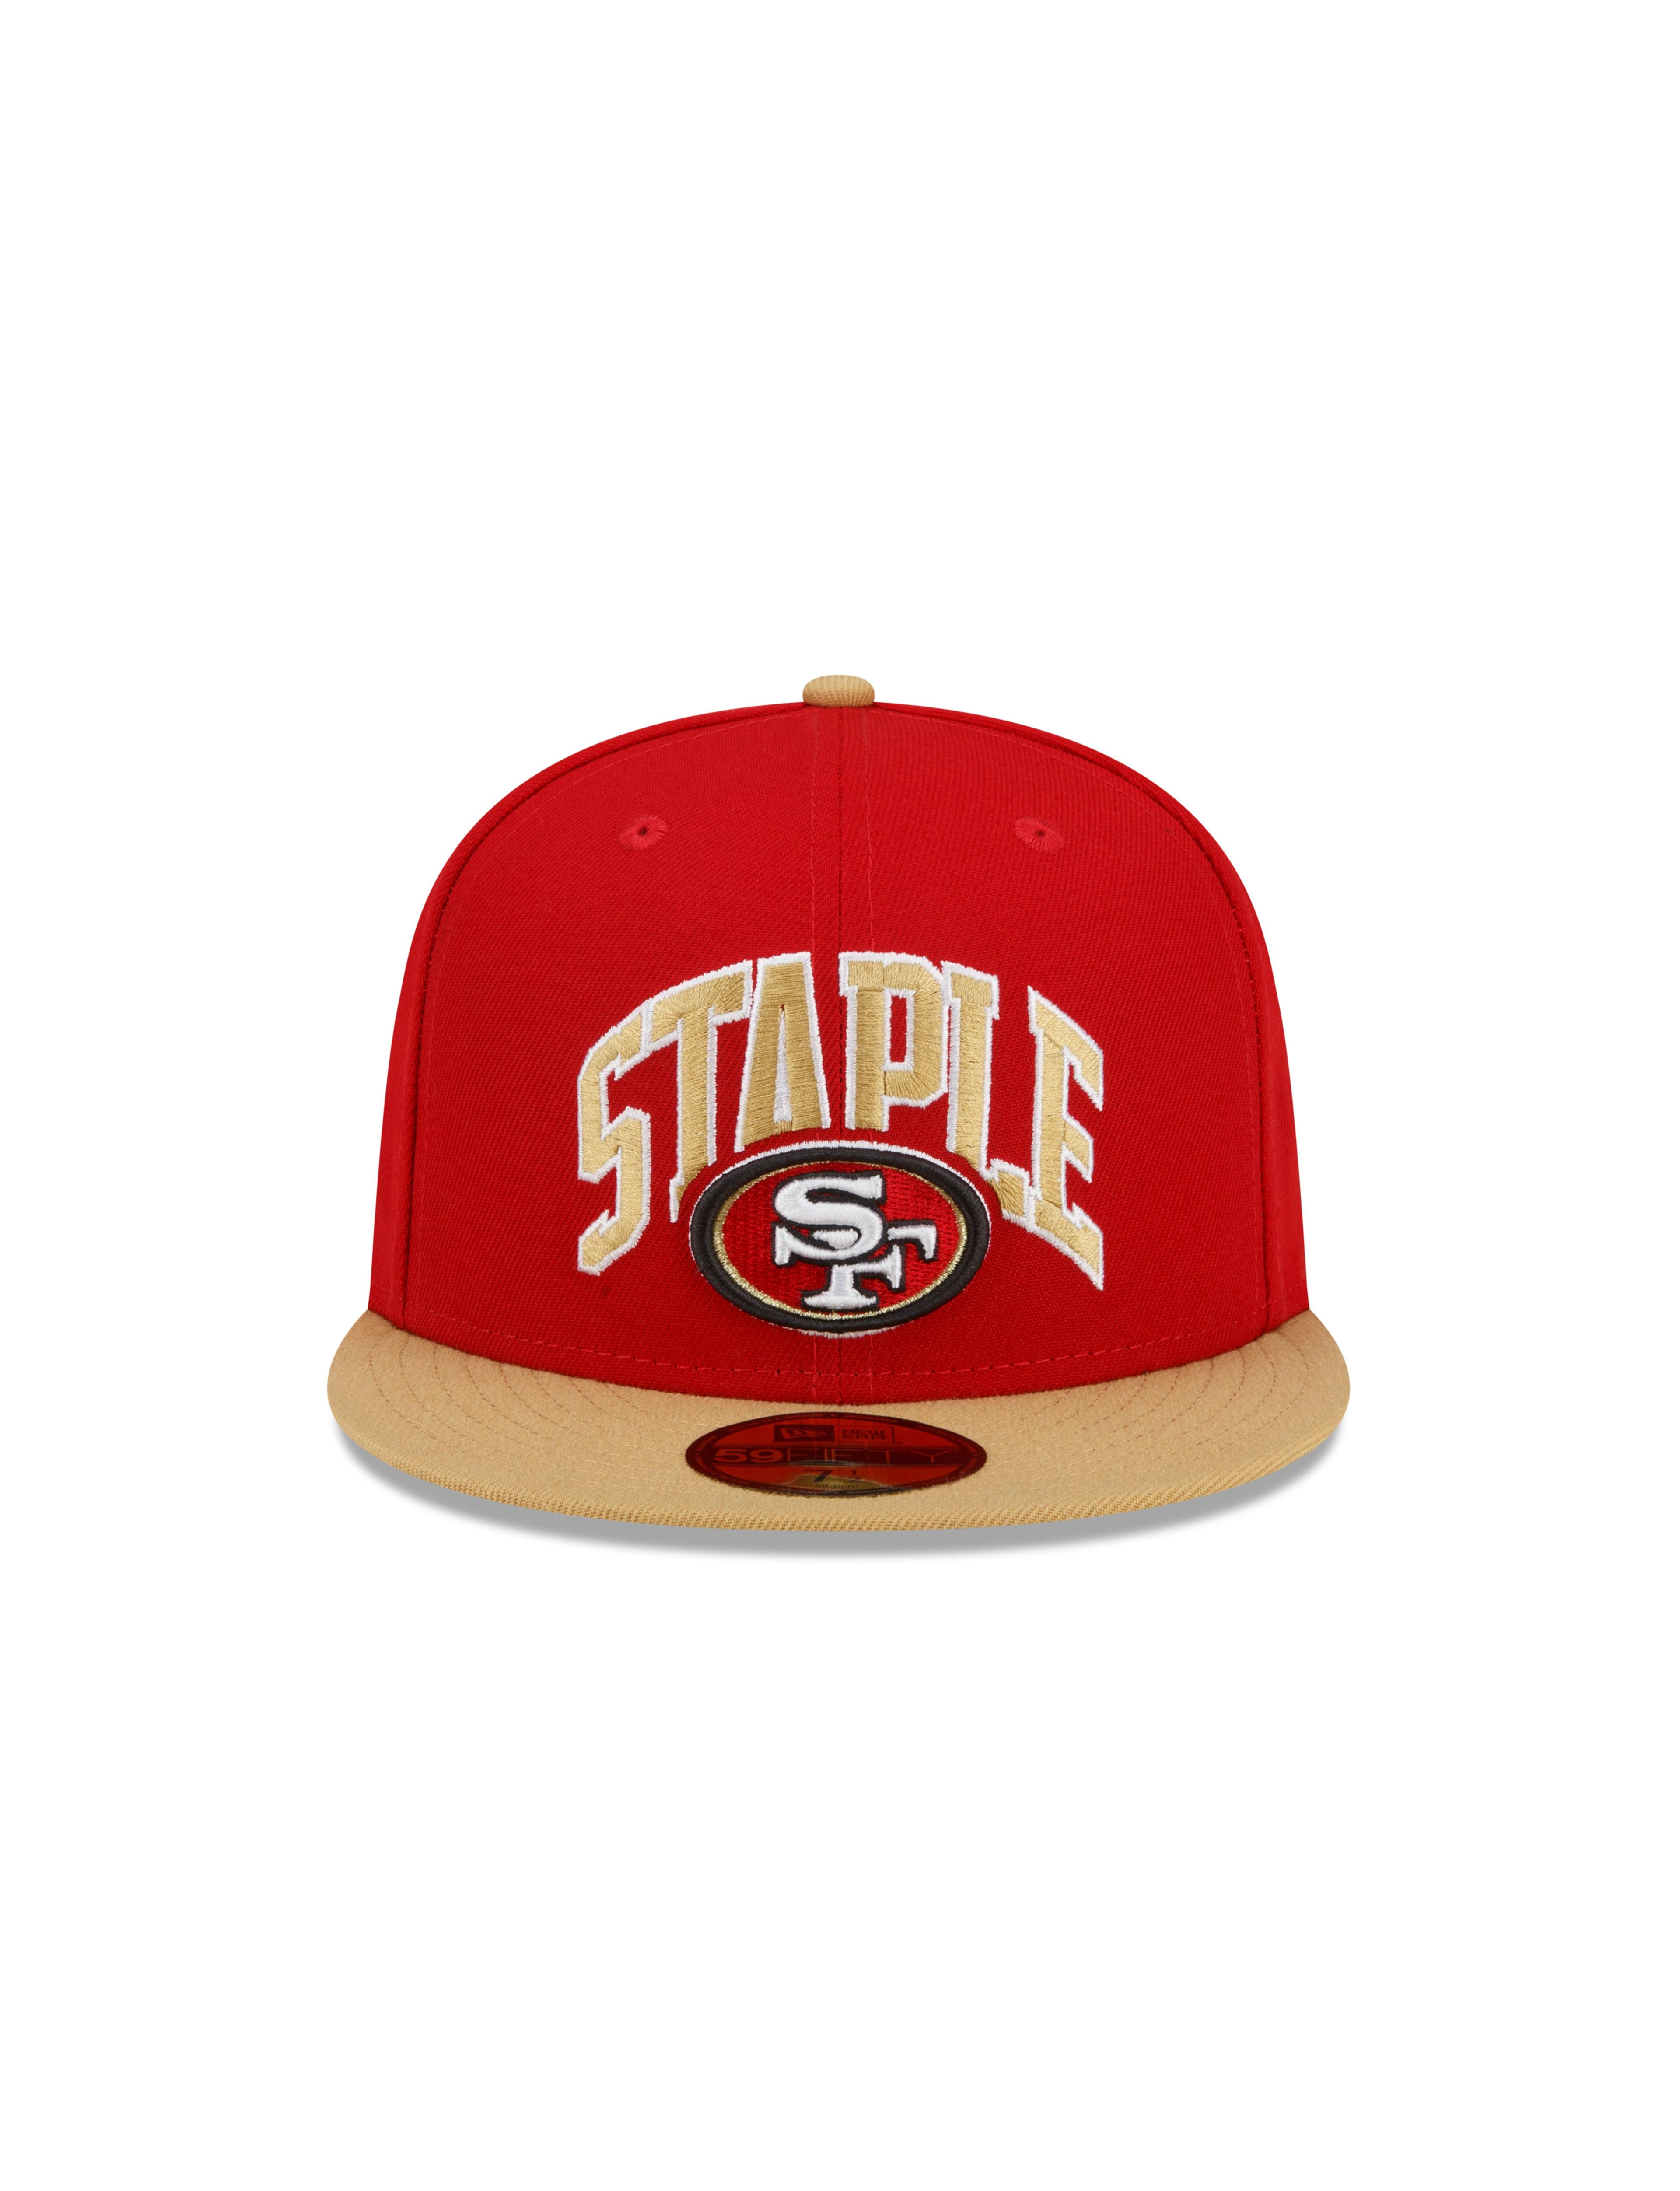 Staple x NFL x New Era 59FIFTY Cap San Francisco 49ers